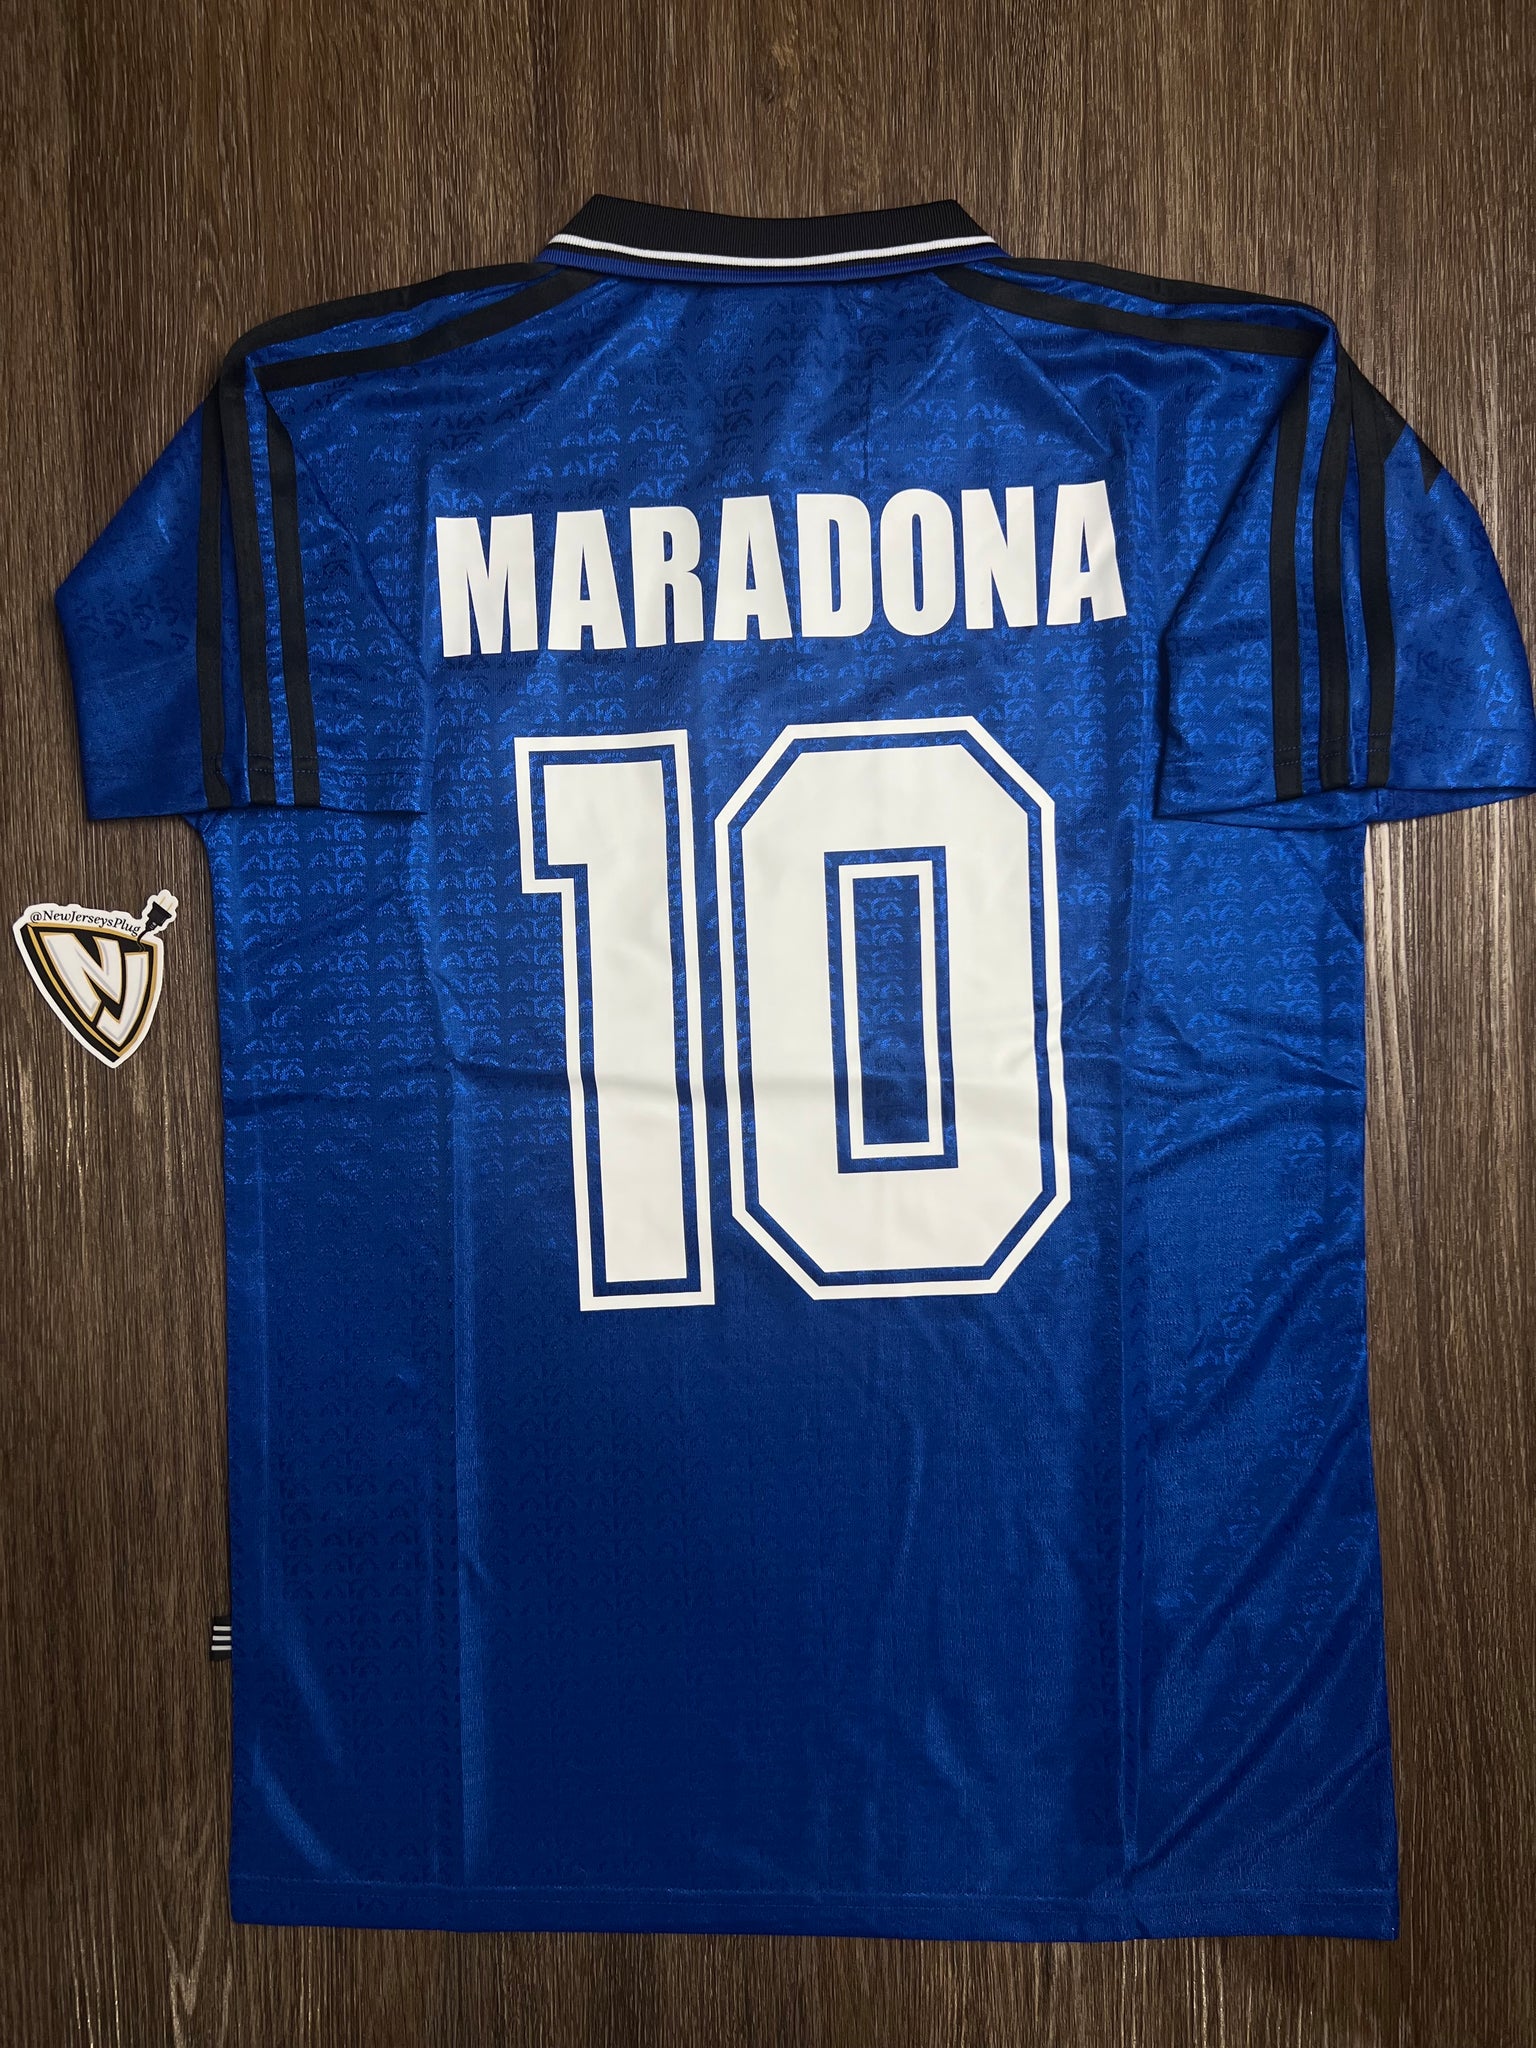 1994 Argentina Diego Maradona 10 Away Jersey